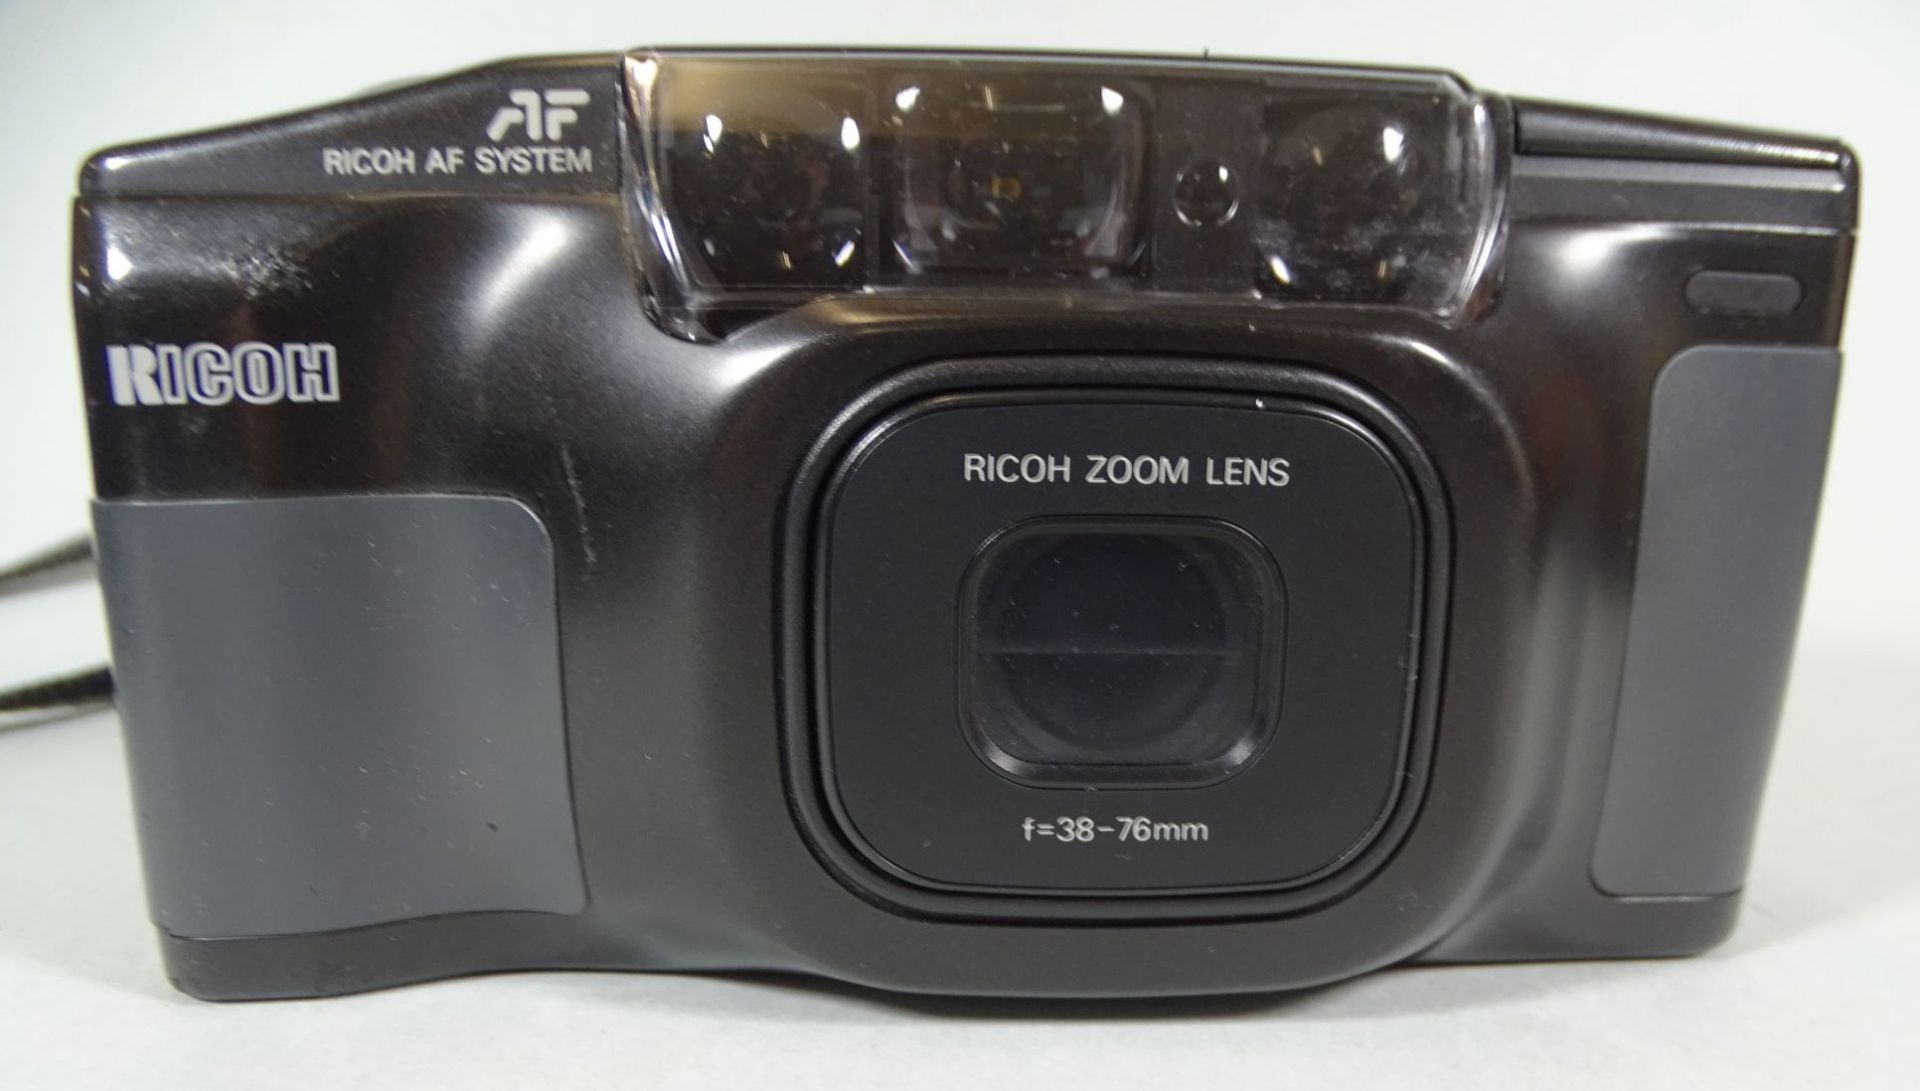 Fotoapparat Rico AF TF-900 in Tasche, gut erhalten- - -22.61 % buyer's premium on the hammer - Bild 2 aus 4